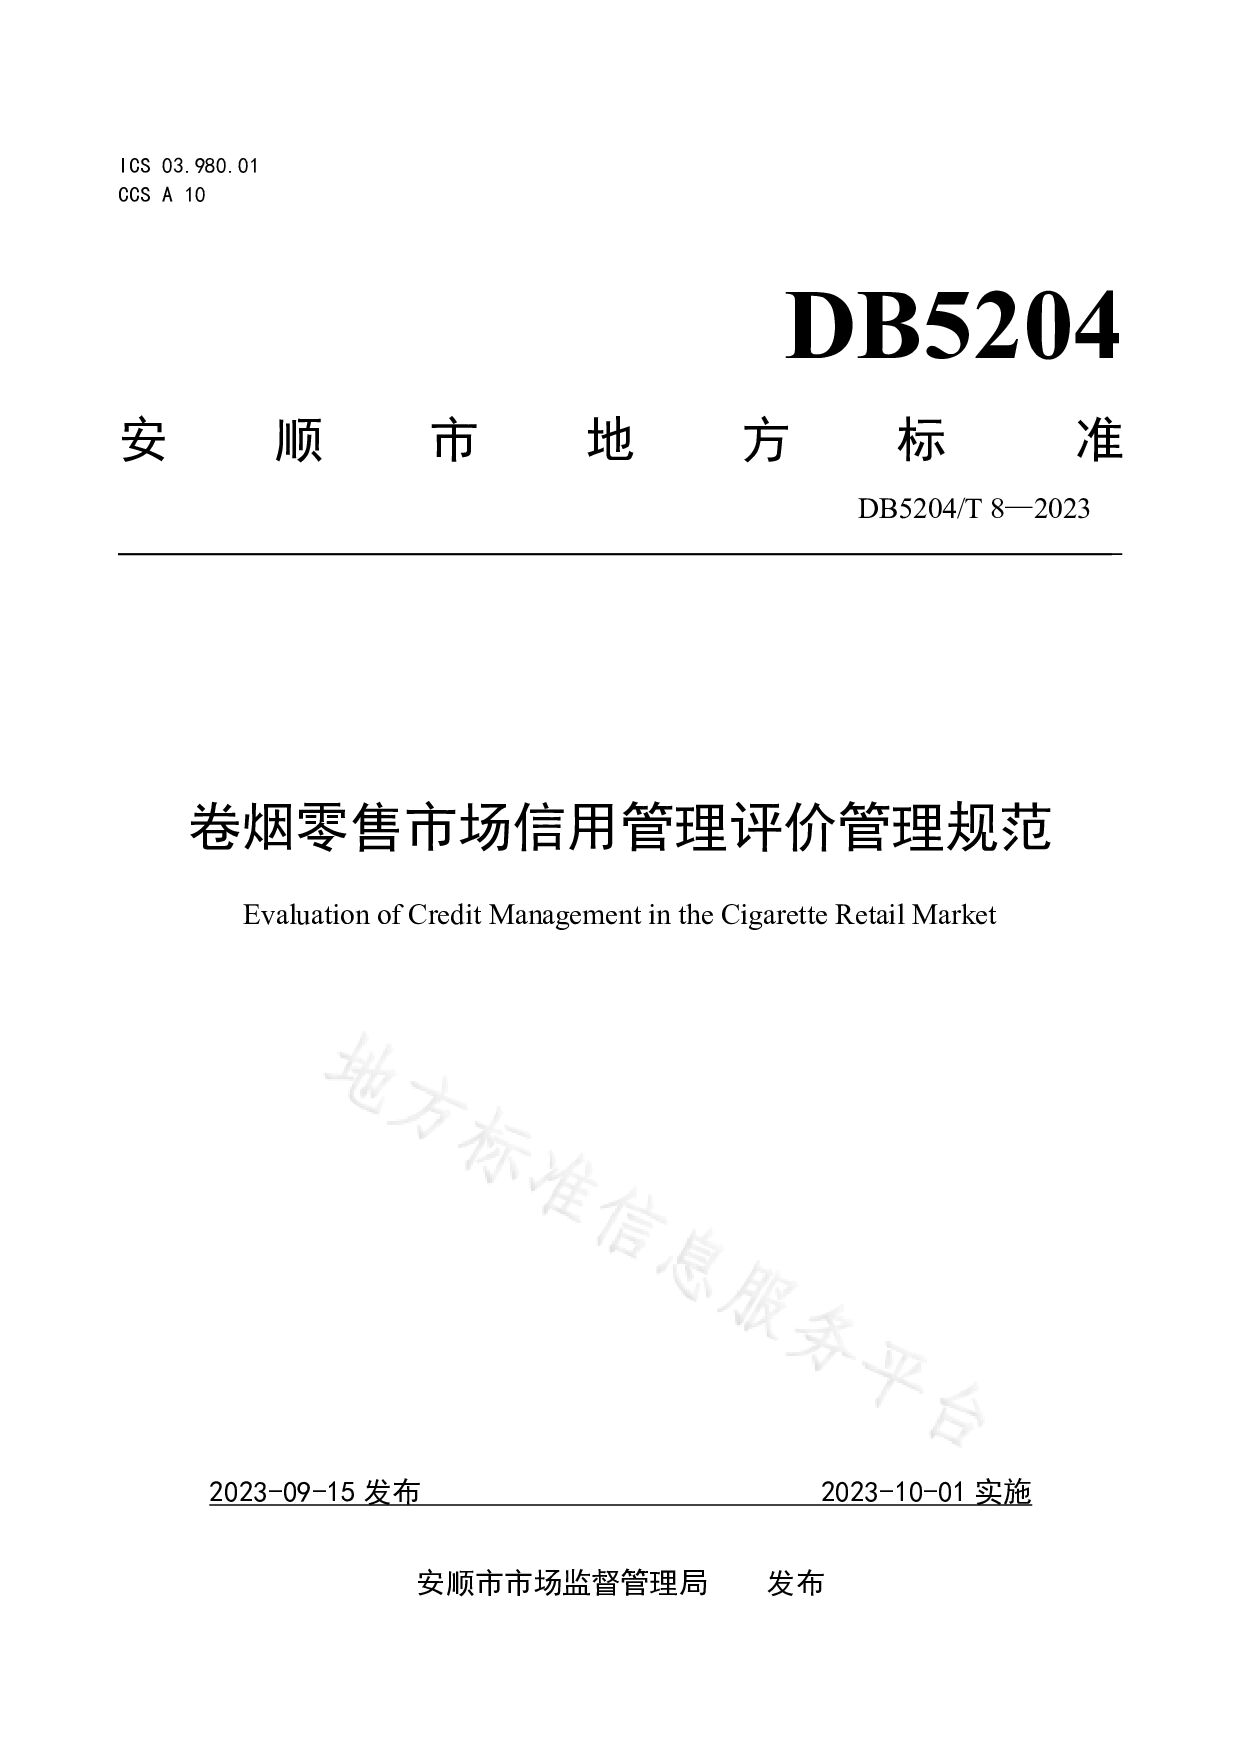 DB5204/T 8-2023封面图